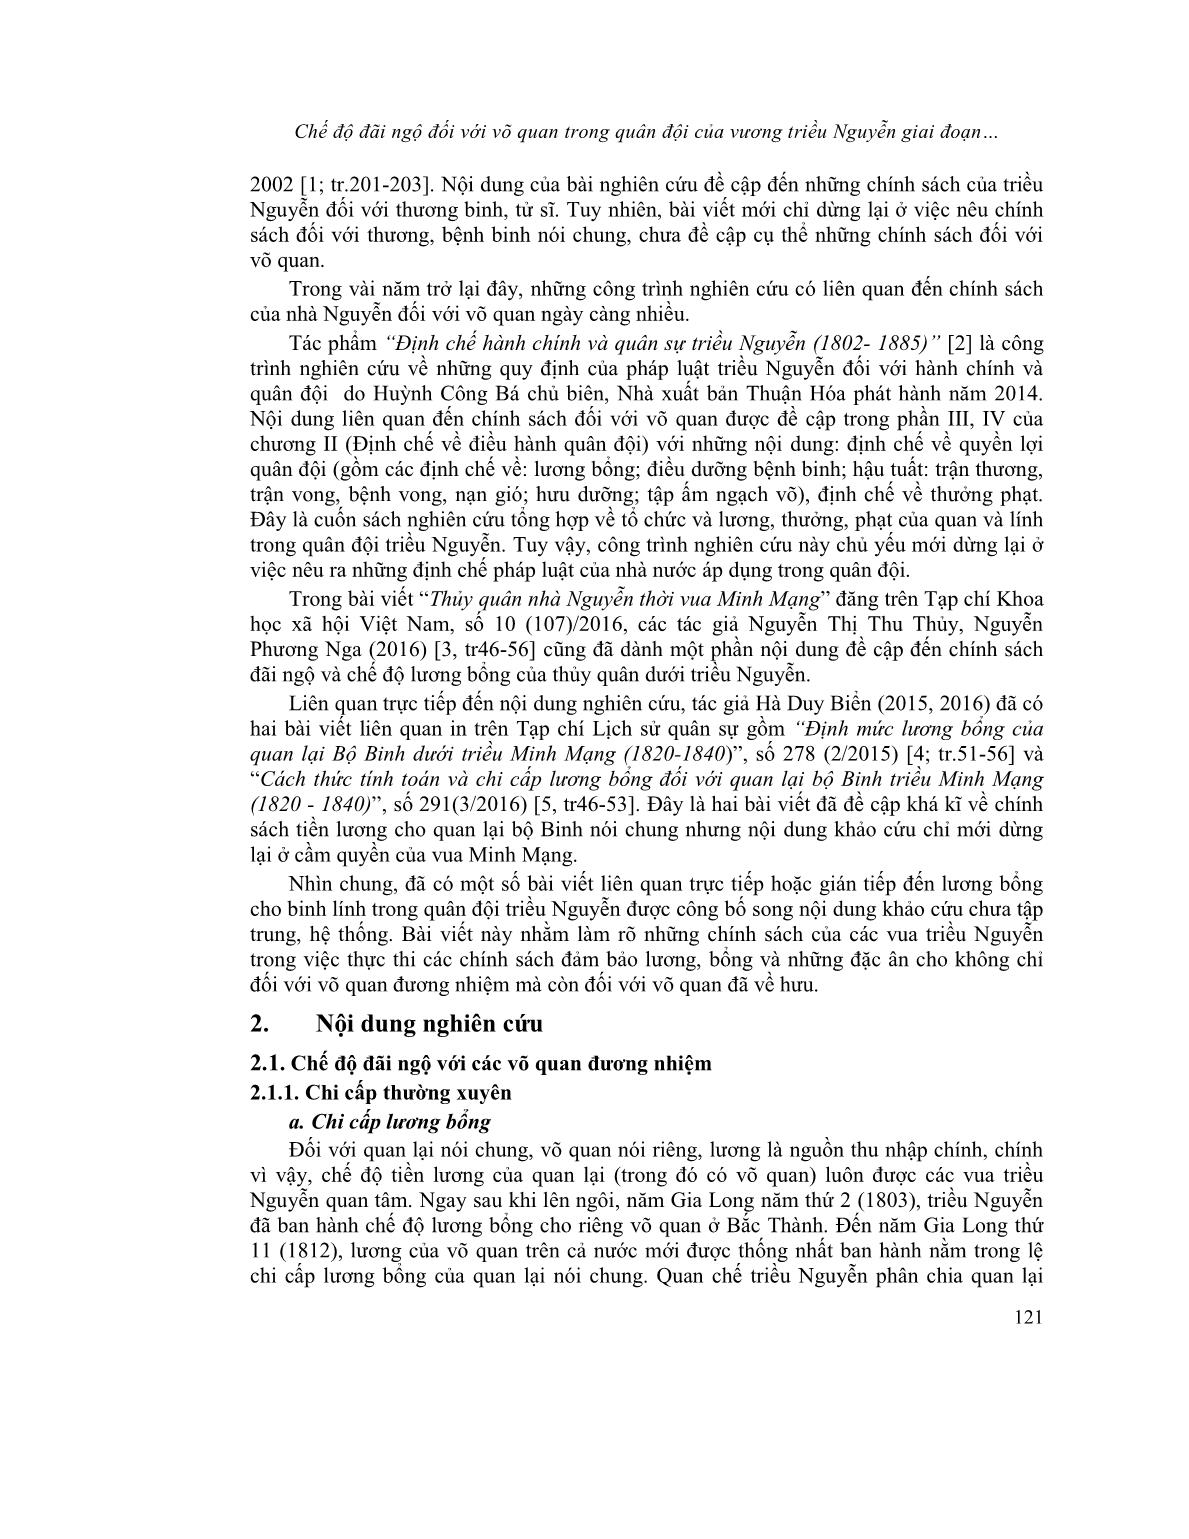 Chế độ đãi ngộ đối với võ quan trong quân đội của vương triều Nguyễn giai đoạn 1802-1884 trang 2